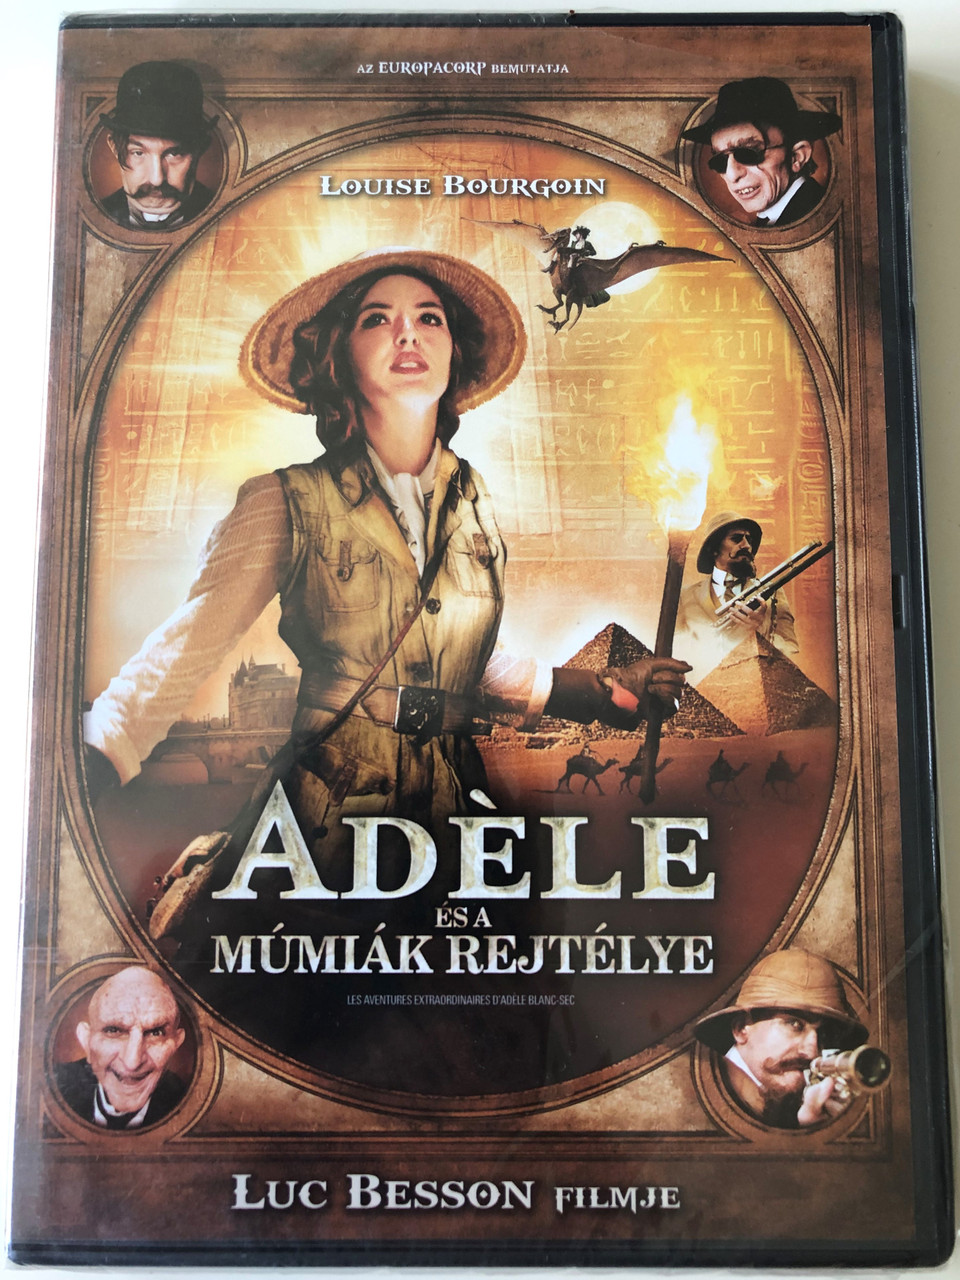 Les Aventures Extraordinaires d'Adele Blanc-Sec DVD 2010 Adéle és a Múmiák  Rejtélye (The Extraordinary